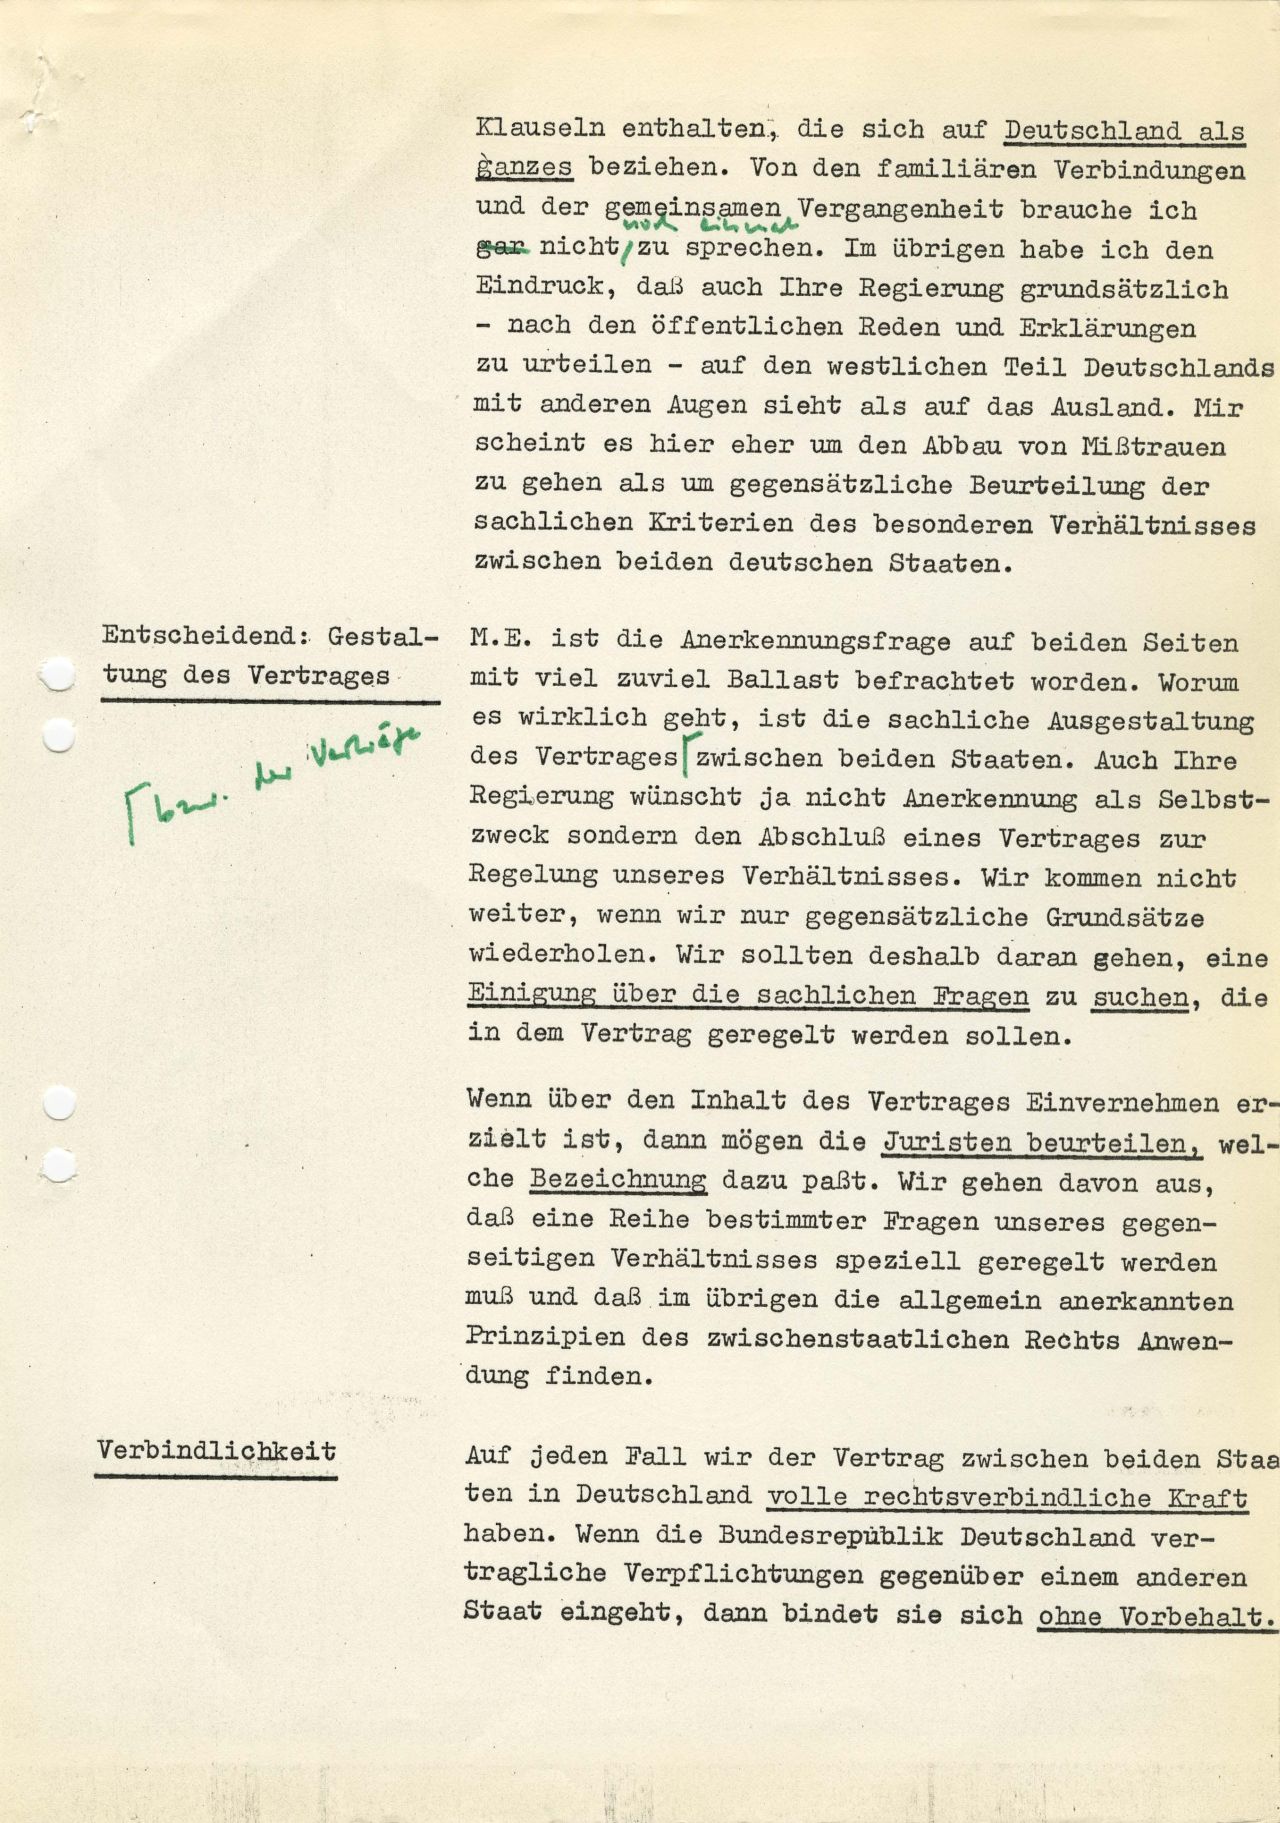 Dokument des Bundeskanzleramts, das für Bundeskanzler Willy Brandt Argumente für das deutsche-deutsche Gipfelgespräch mit dem Ministerratsvorsitzenden der Deutschen Demokratischen Republik (DDR), Willi Stoph, am 19. März 1970 in Erfurt zusammenfasst. Gegenstand sind die deutsch-deutschen Beziehungen.